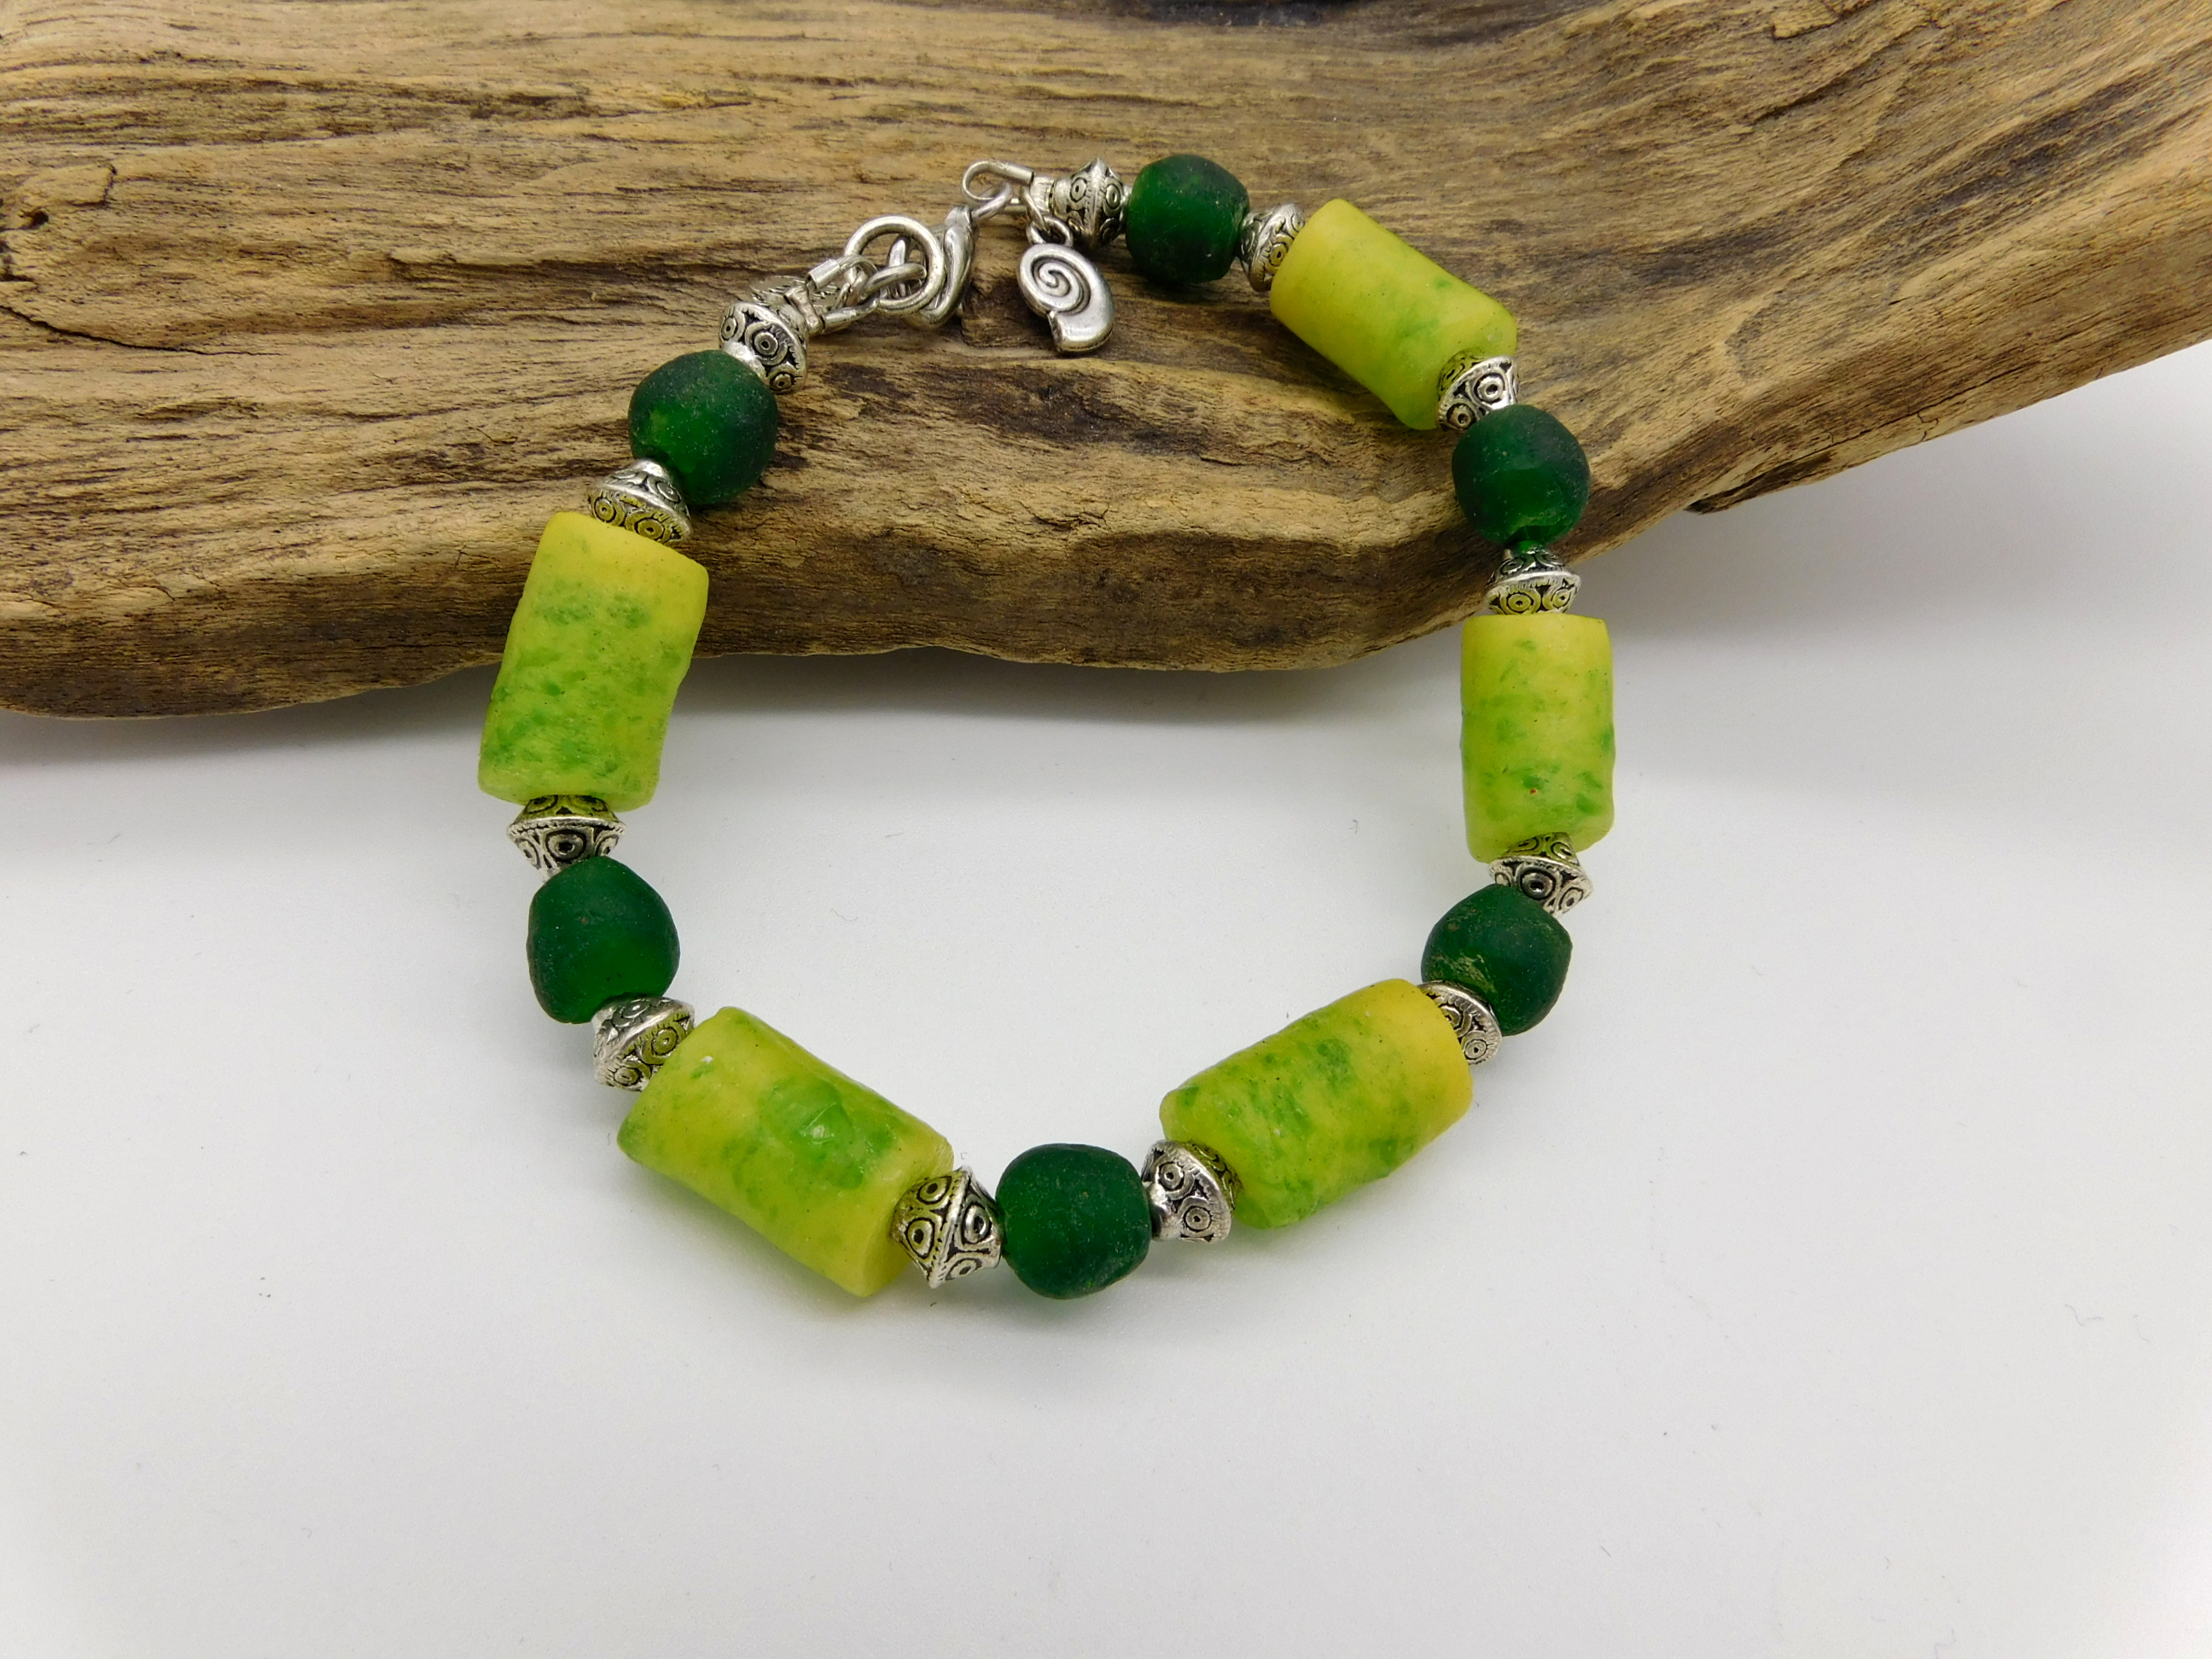 afrikanisches Armband - Krobo-Recyclingglas-Perlen - grün, gelb